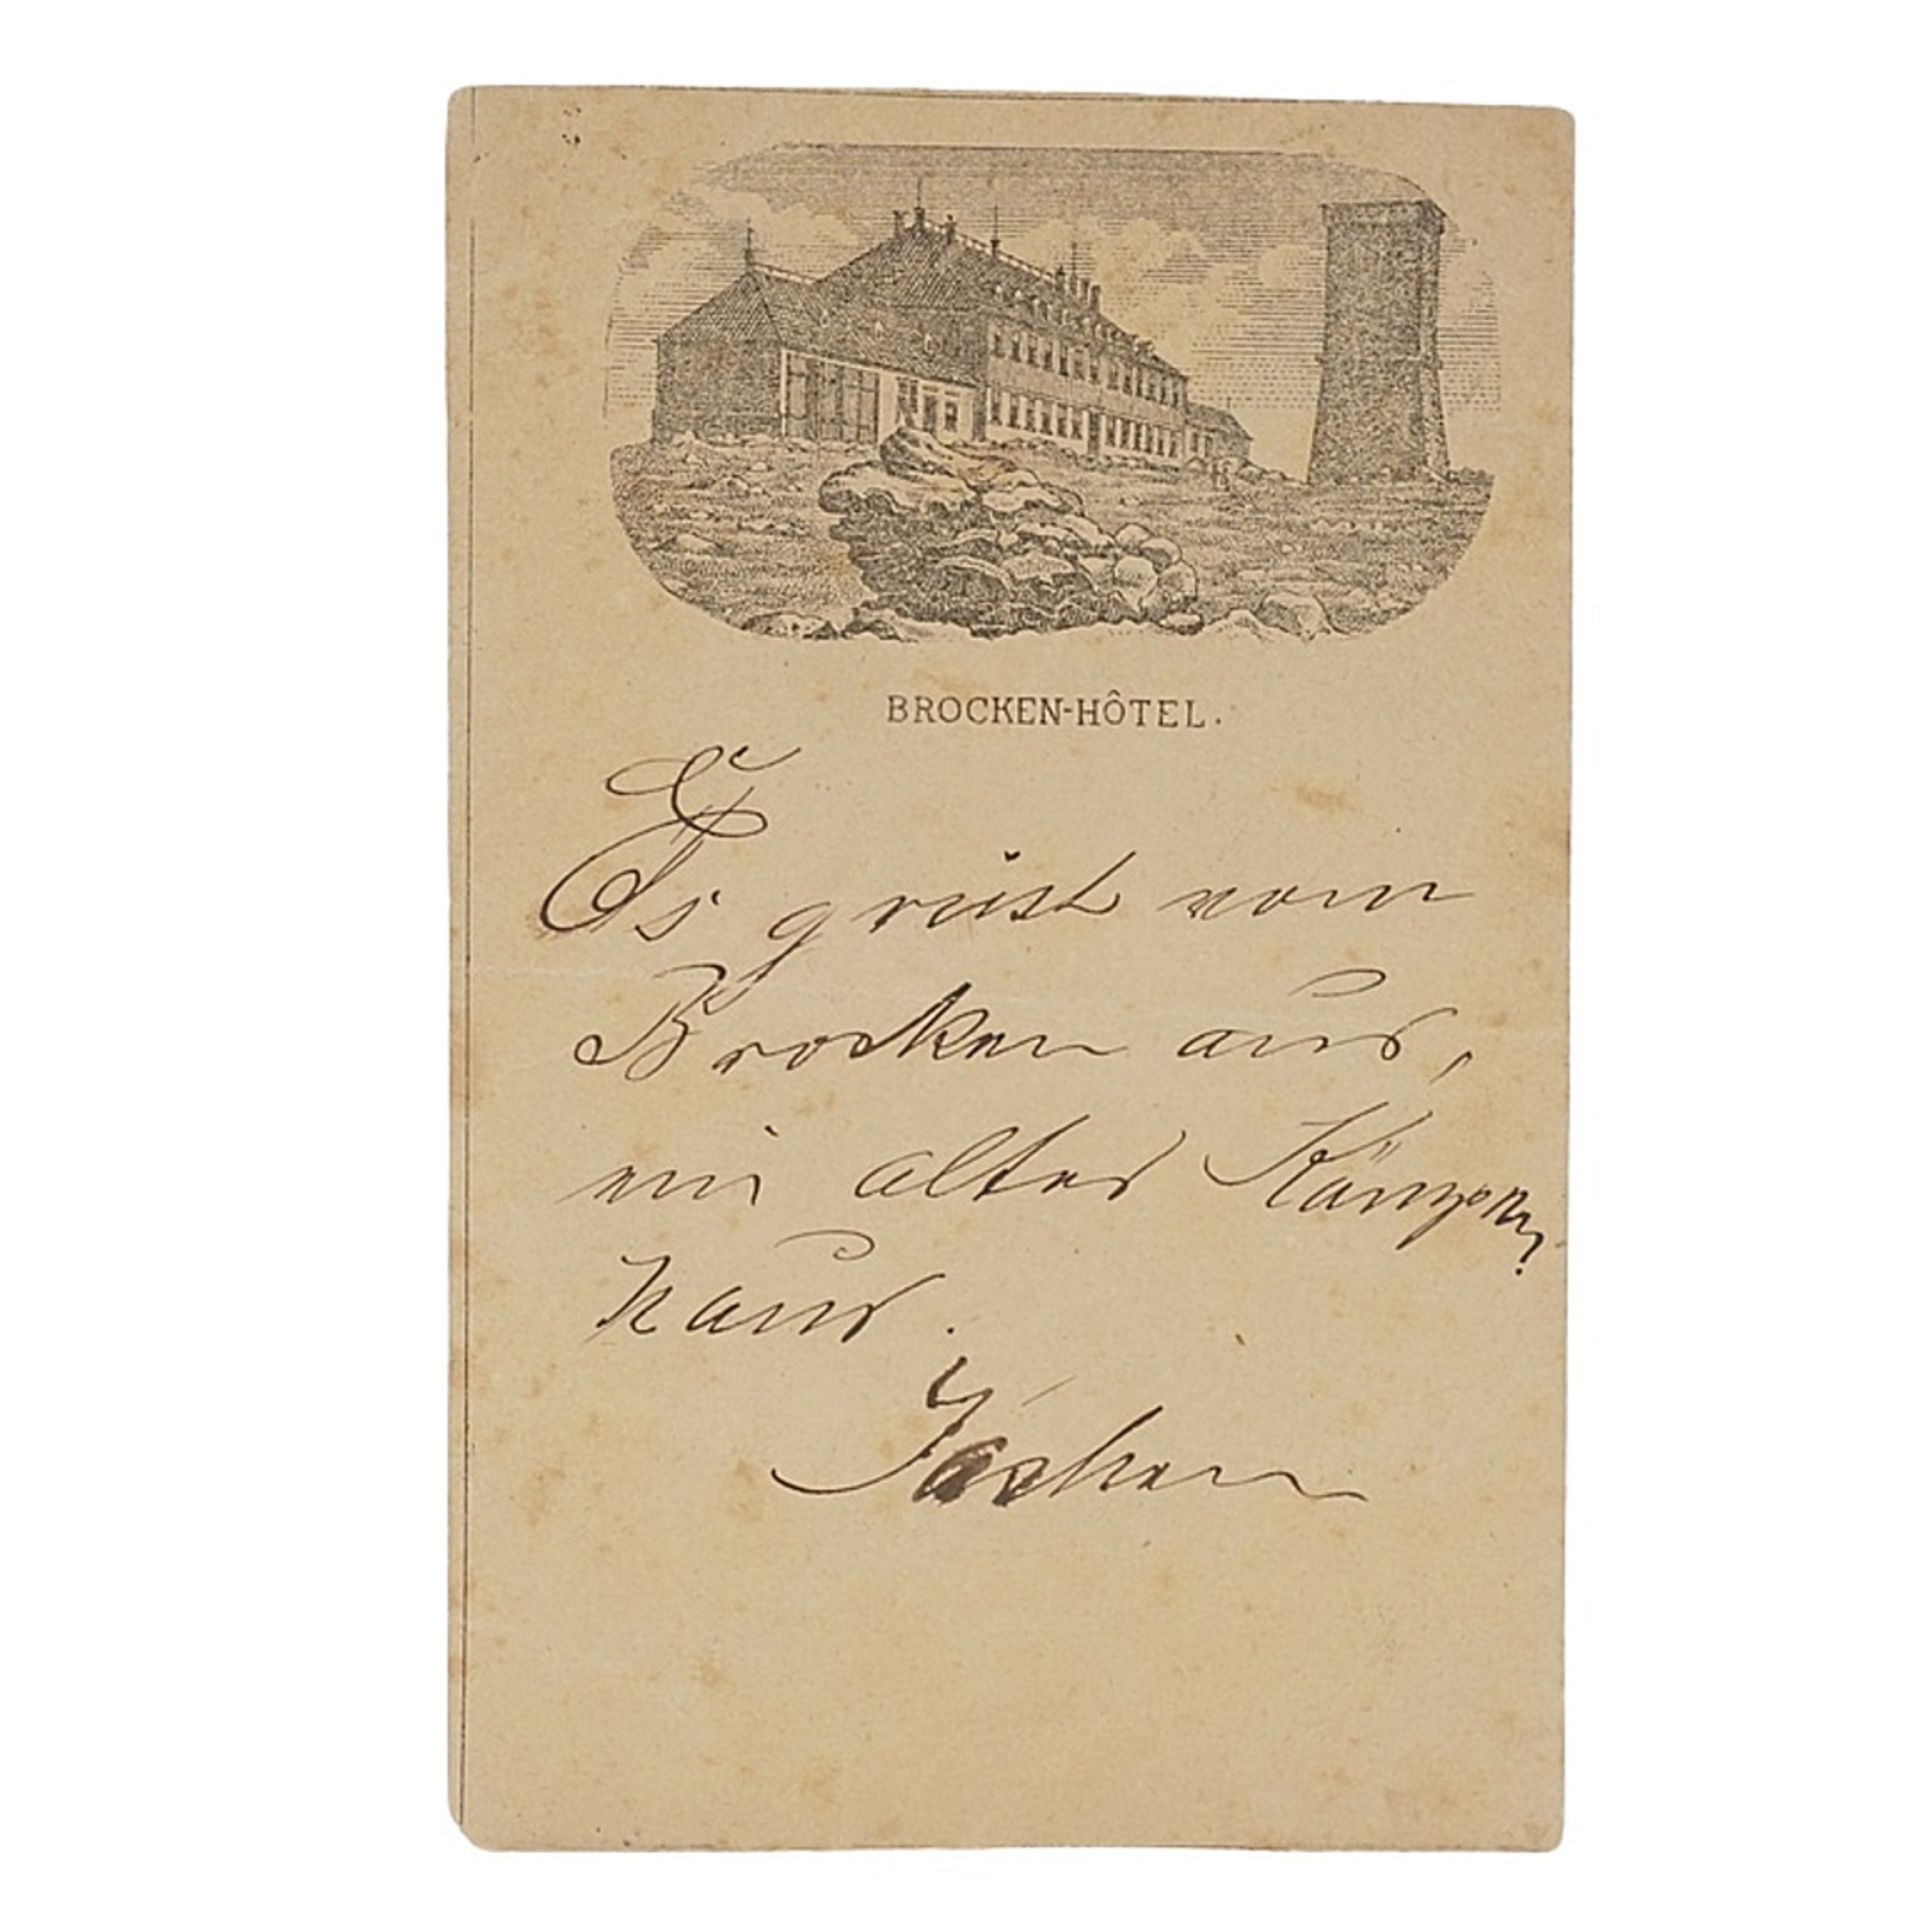 Lithografische Werkstatt Angerstein, Wernigerode, postcard, around 1870